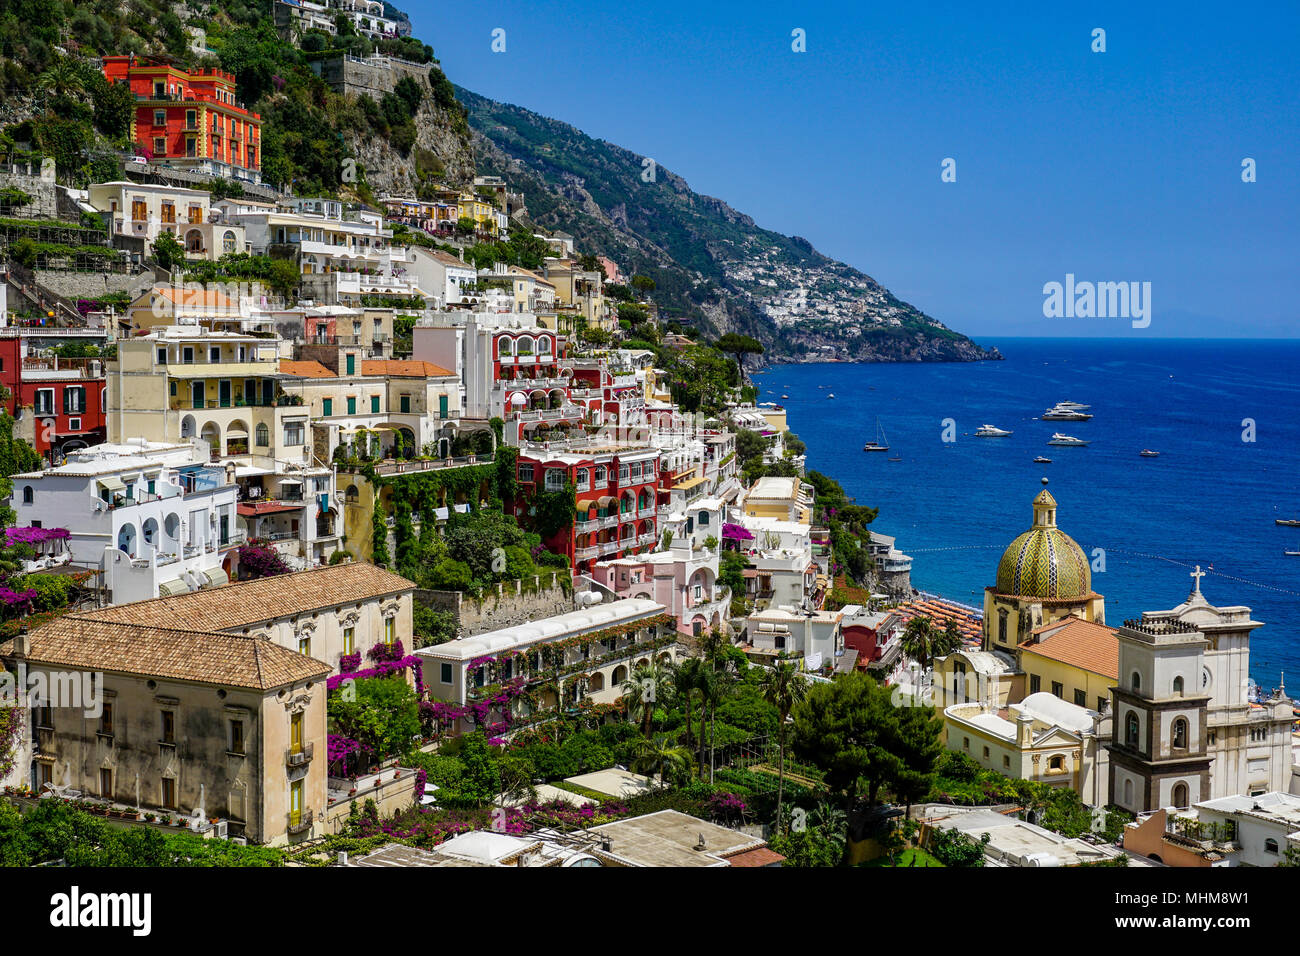 Vista de Positano, Italia desde arriba con vistas a la costa de Amalfi y la Chiesa di Santa Maria Assunta Foto de stock